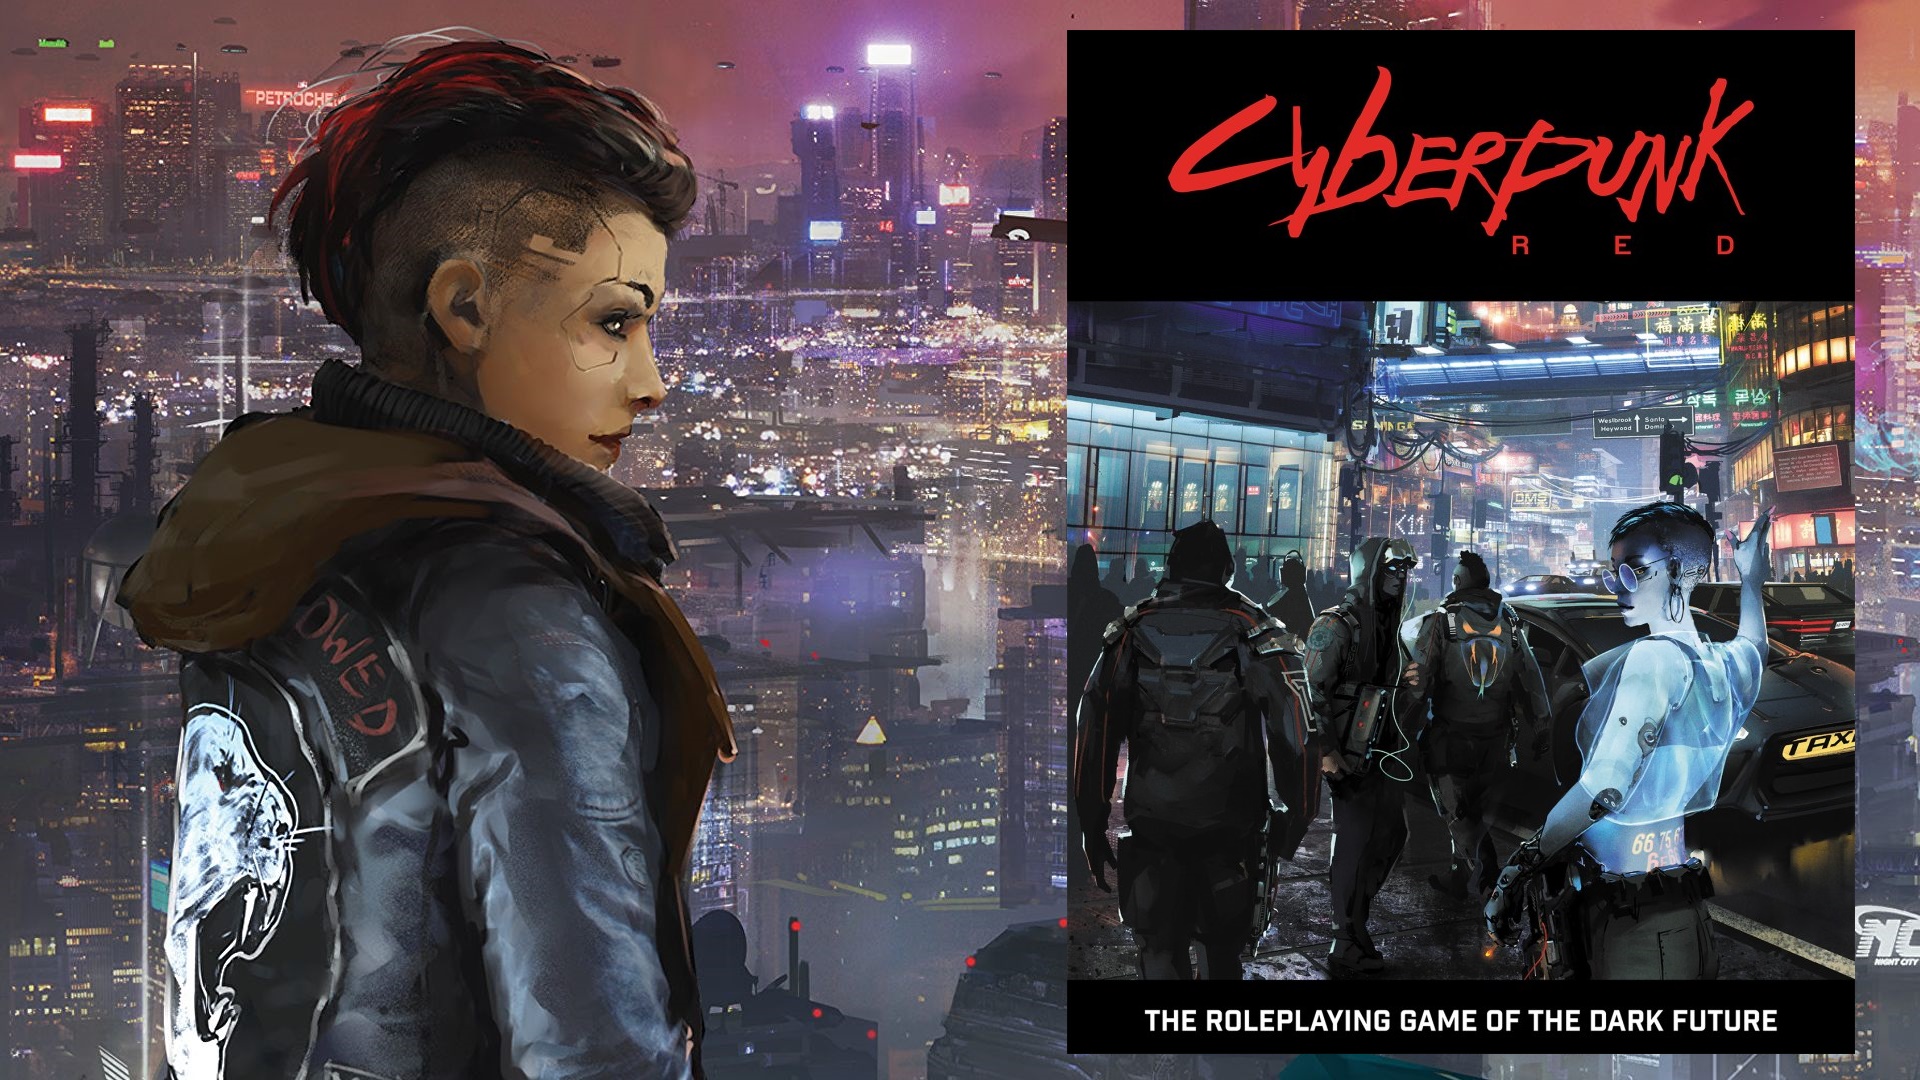 Capa do livro de regras de Cyberpunk Red